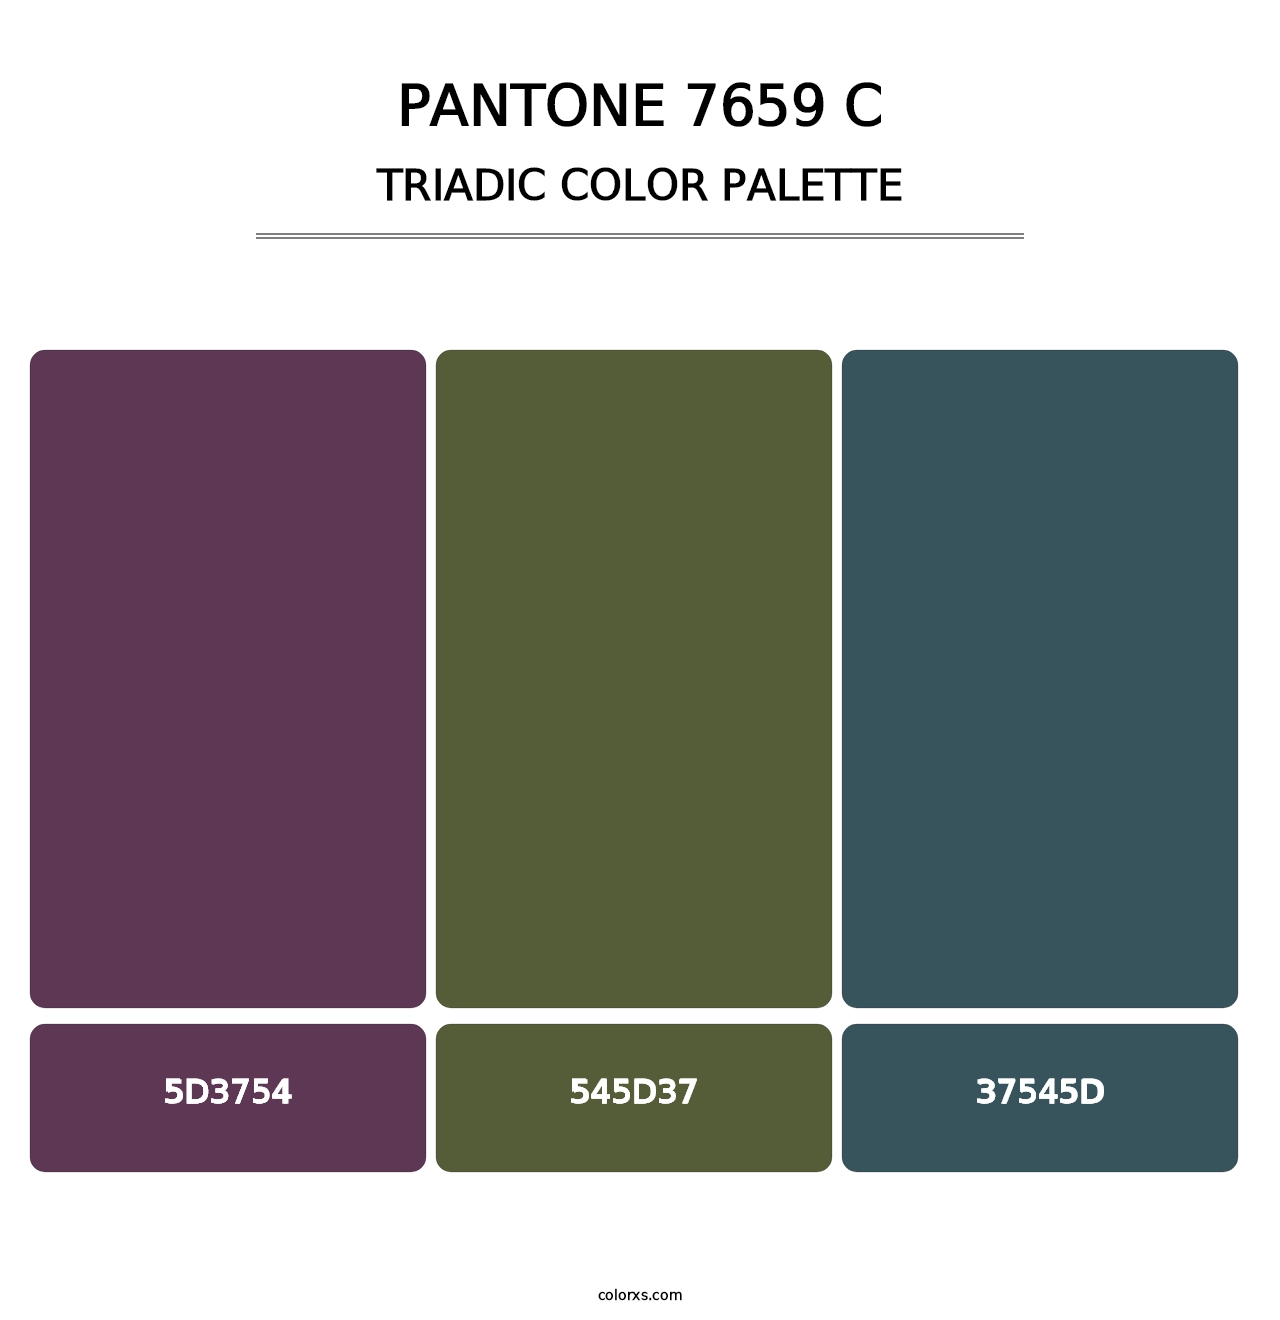 PANTONE 7659 C - Triadic Color Palette